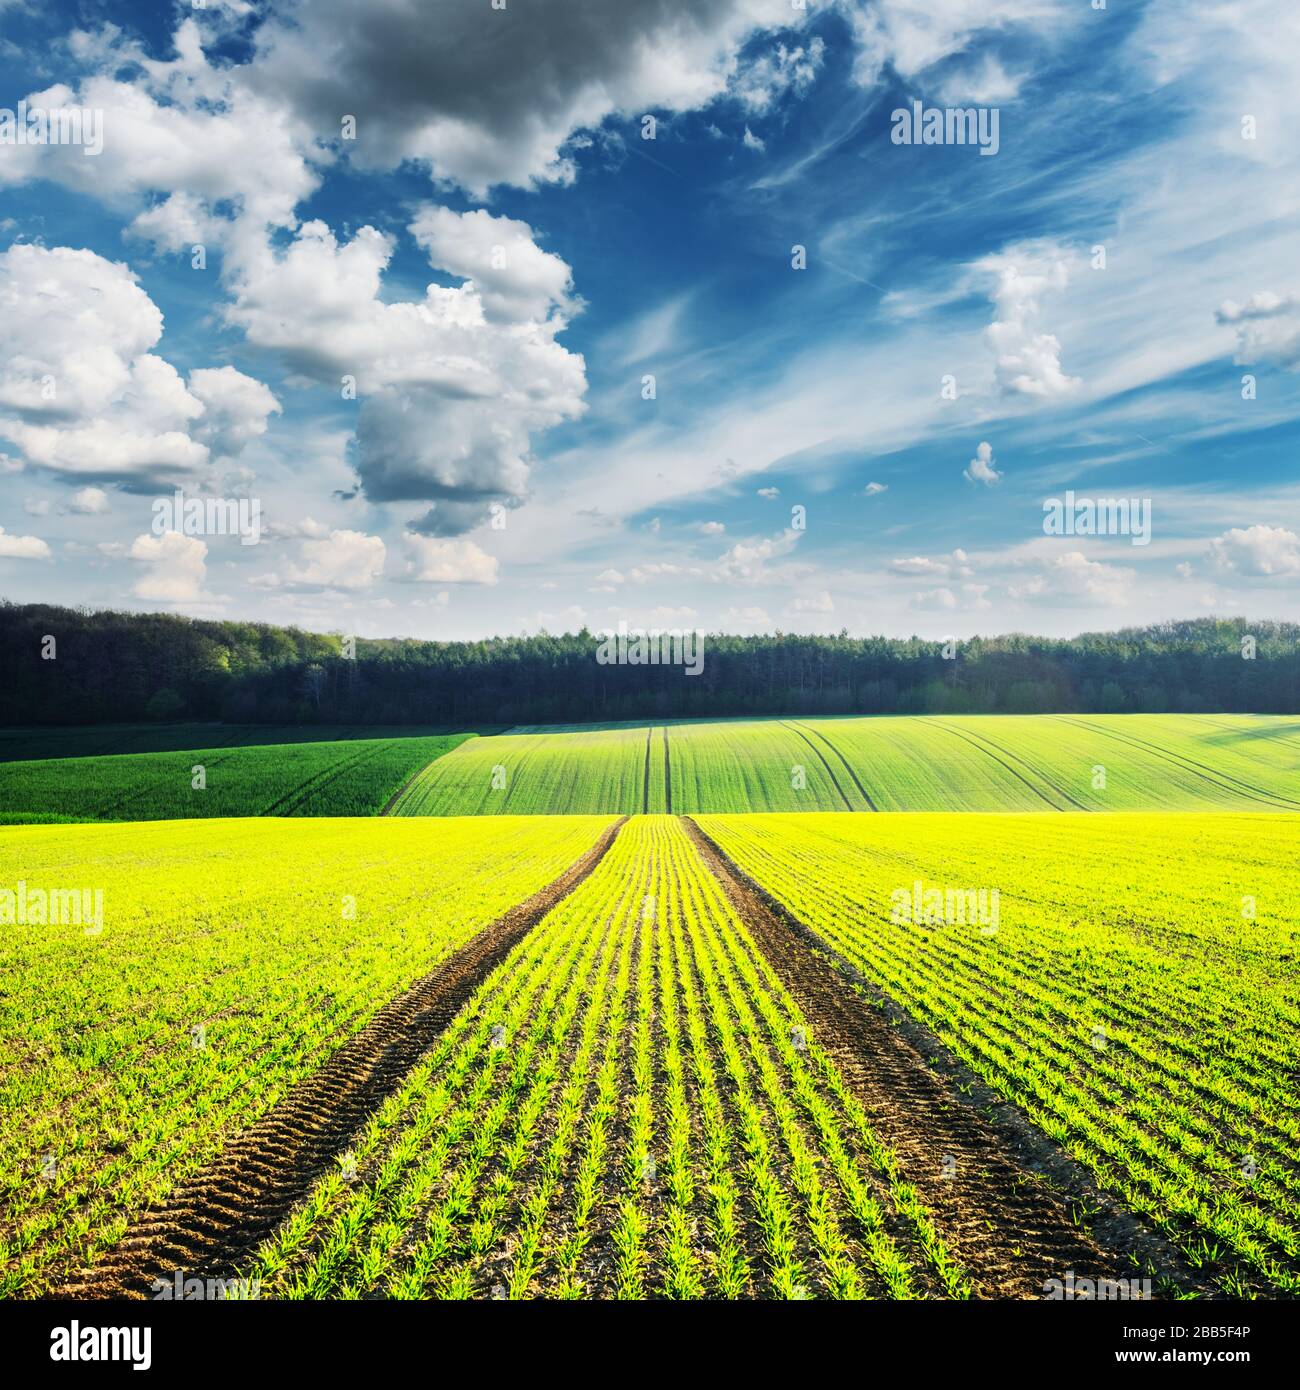 Paysage rural avec champs agricoles et ciel bleu. Région de la Moravie du Sud, République tchèque Banque D'Images